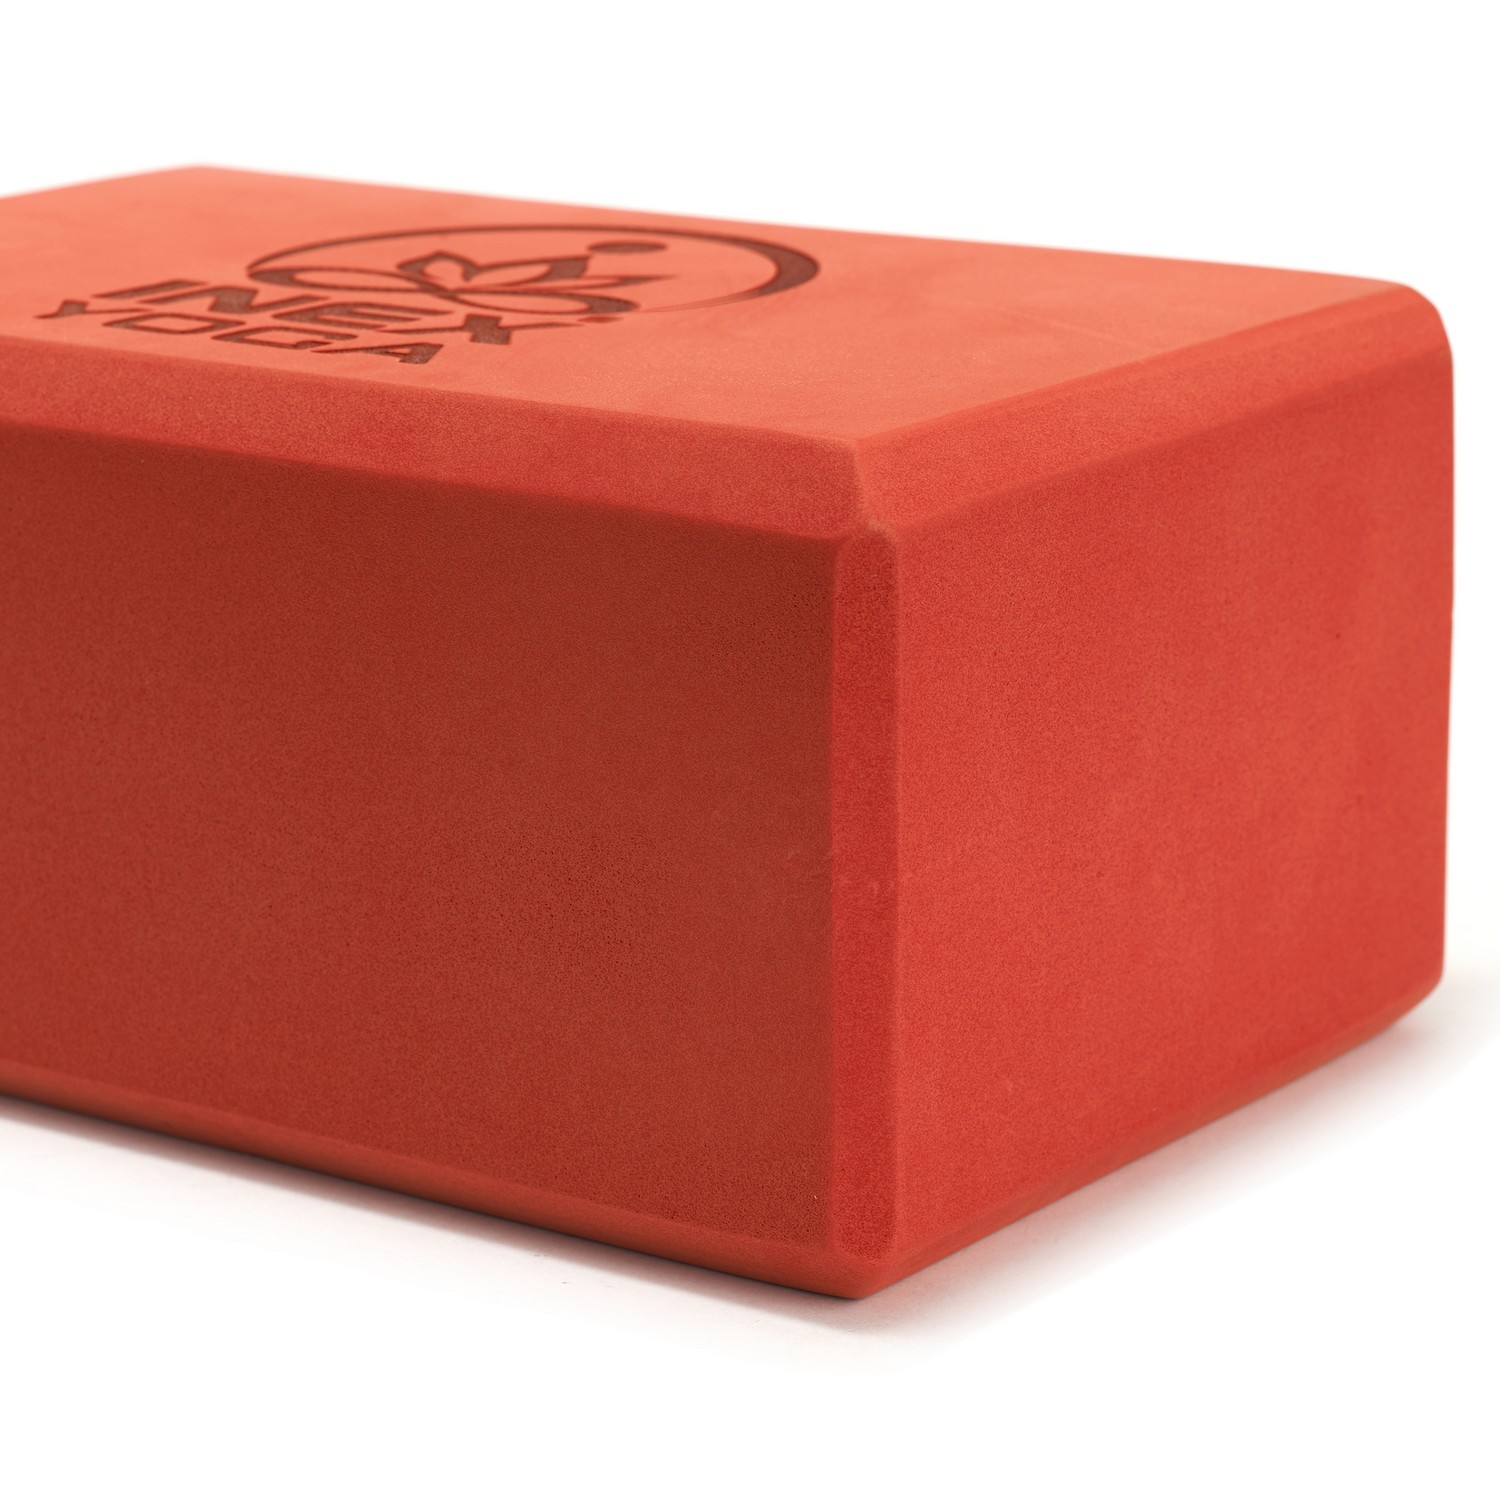 Блок для йоги Intex EVA Yoga Block YGBK-RD 23x15x10 см, красный 1500_1500